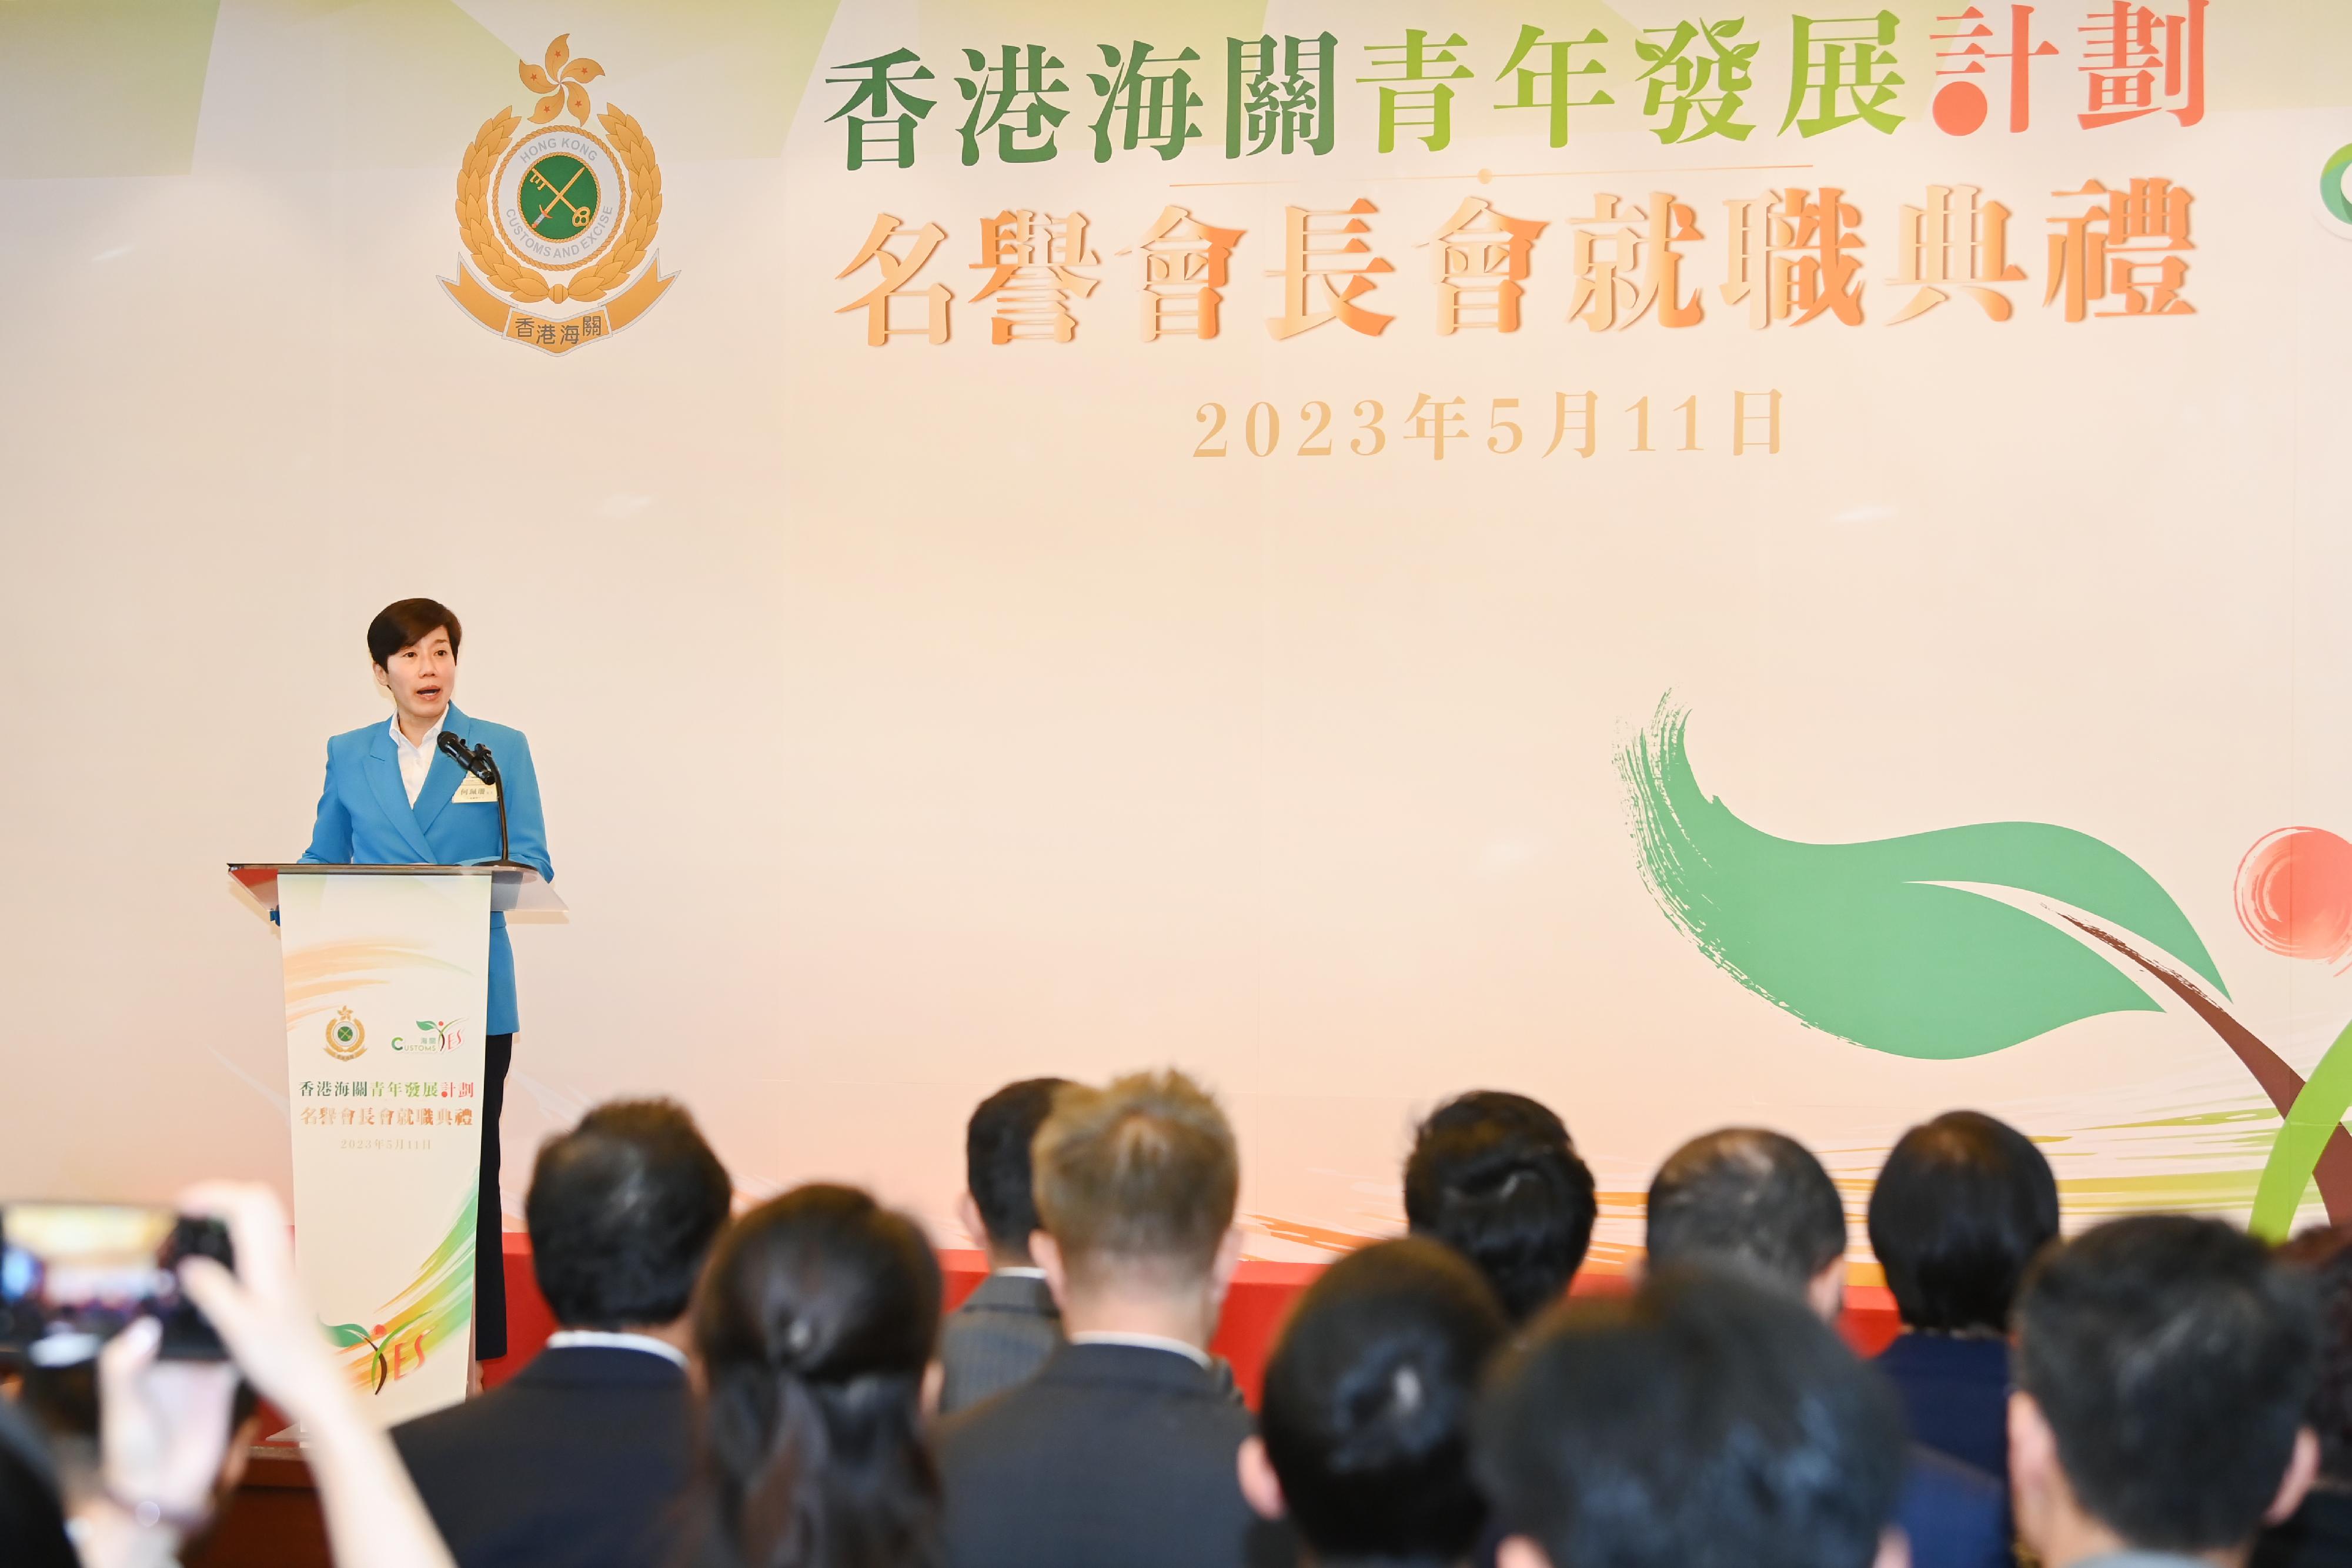 香港海关今日（五月十一日）在香港海关总部大楼举行「香港海关青年发展计划」名誉会长会就职典礼。图示海关关长何佩珊在典礼上致辞。